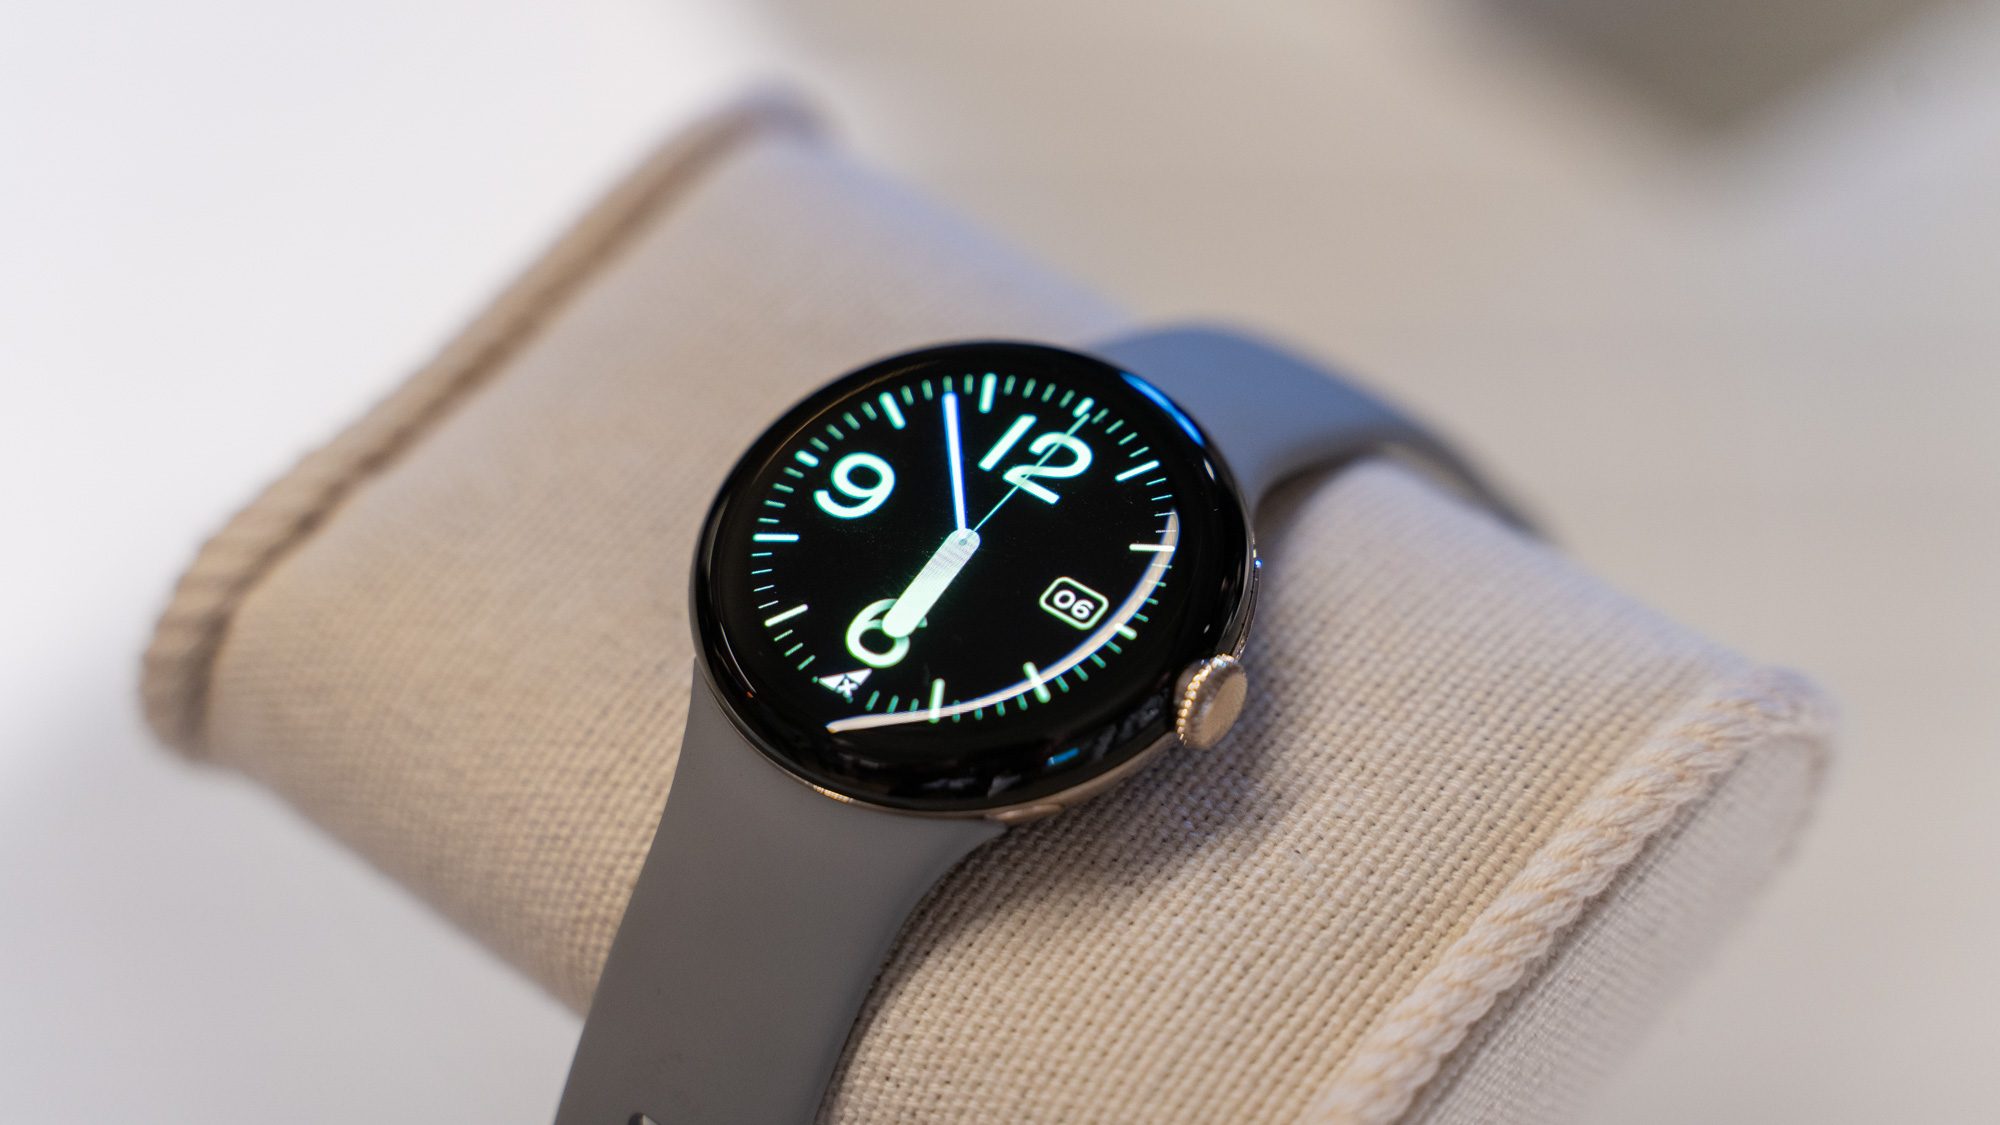 Google Pixel Watch Smartwatch, auf einem Stoffkissen liegend, mit eingeschaltetem Display.